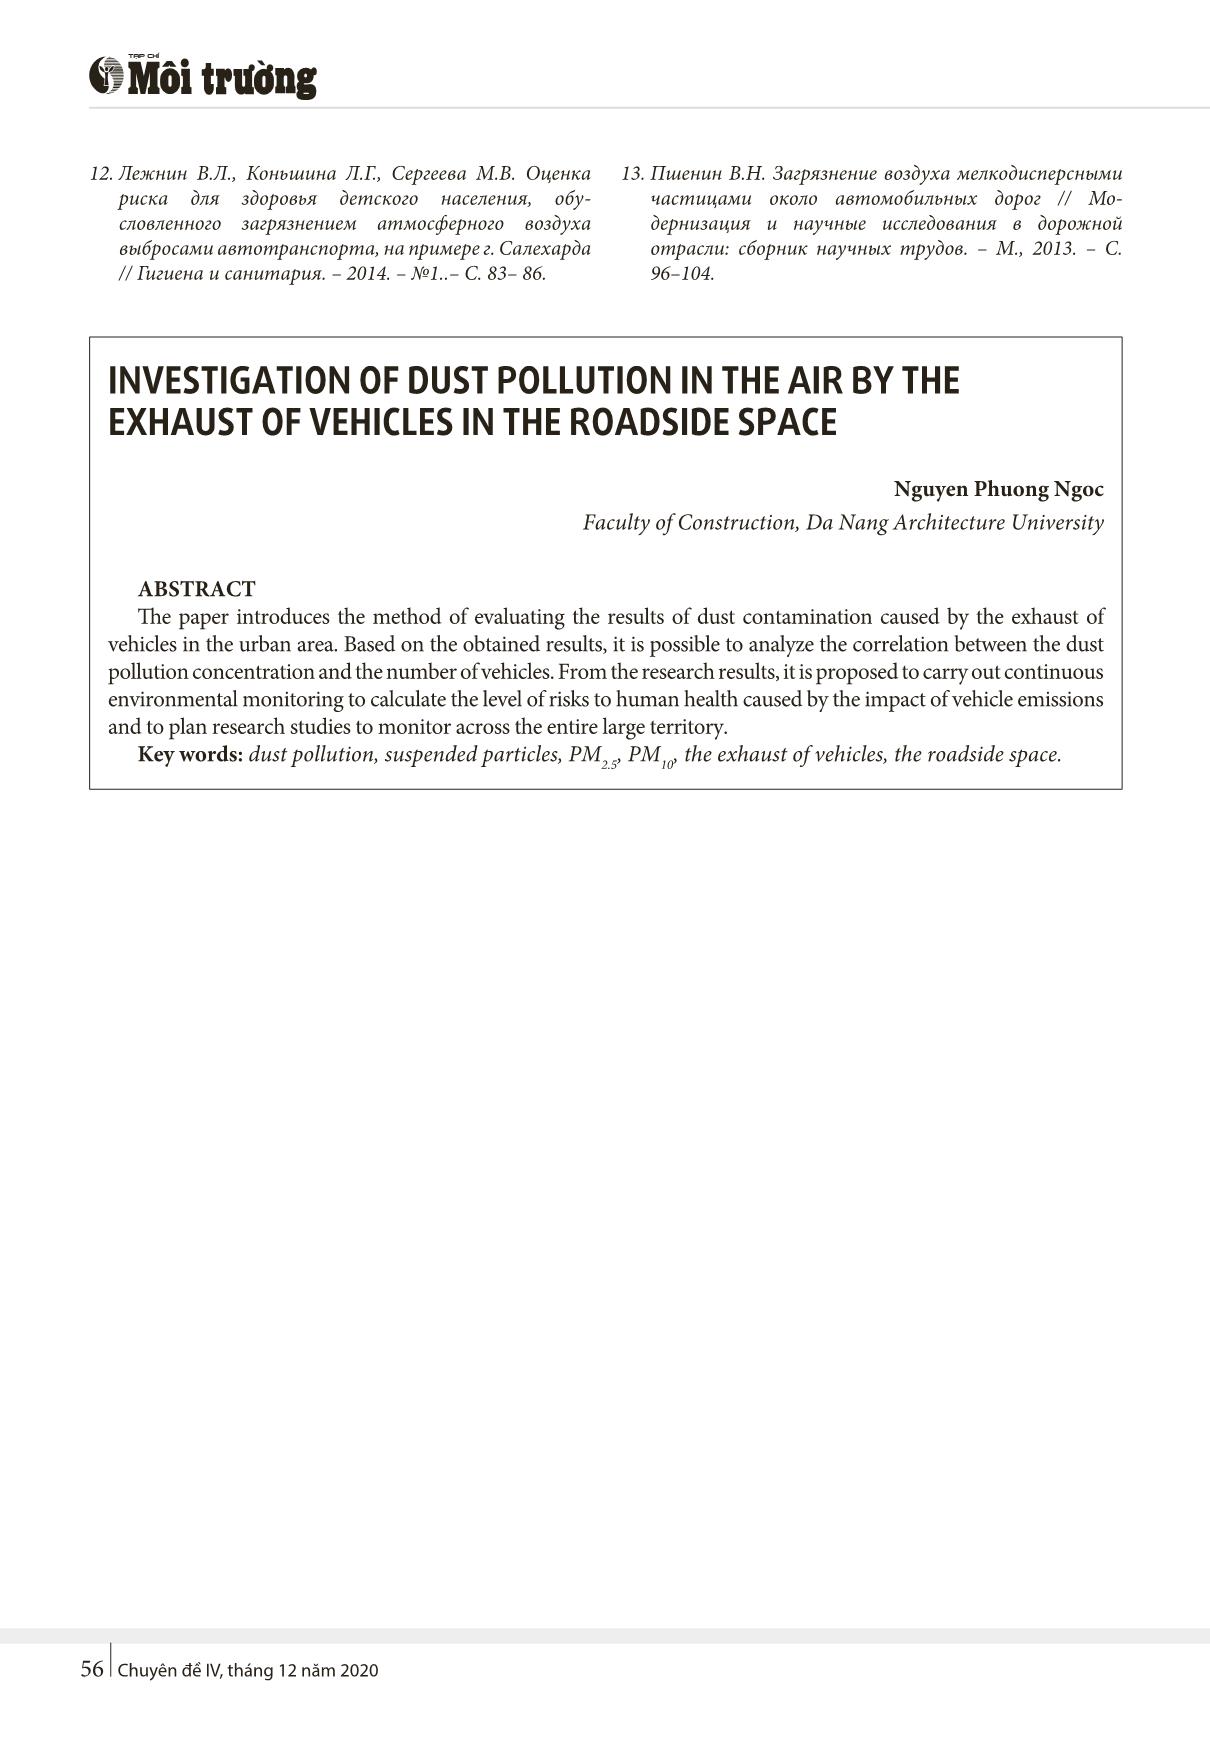 Nghiên cứu mức độ ô nhiễm bụi trong không khí do khí thải của phương tiện giao thông tại khu vực ven đường đô thị trang 5